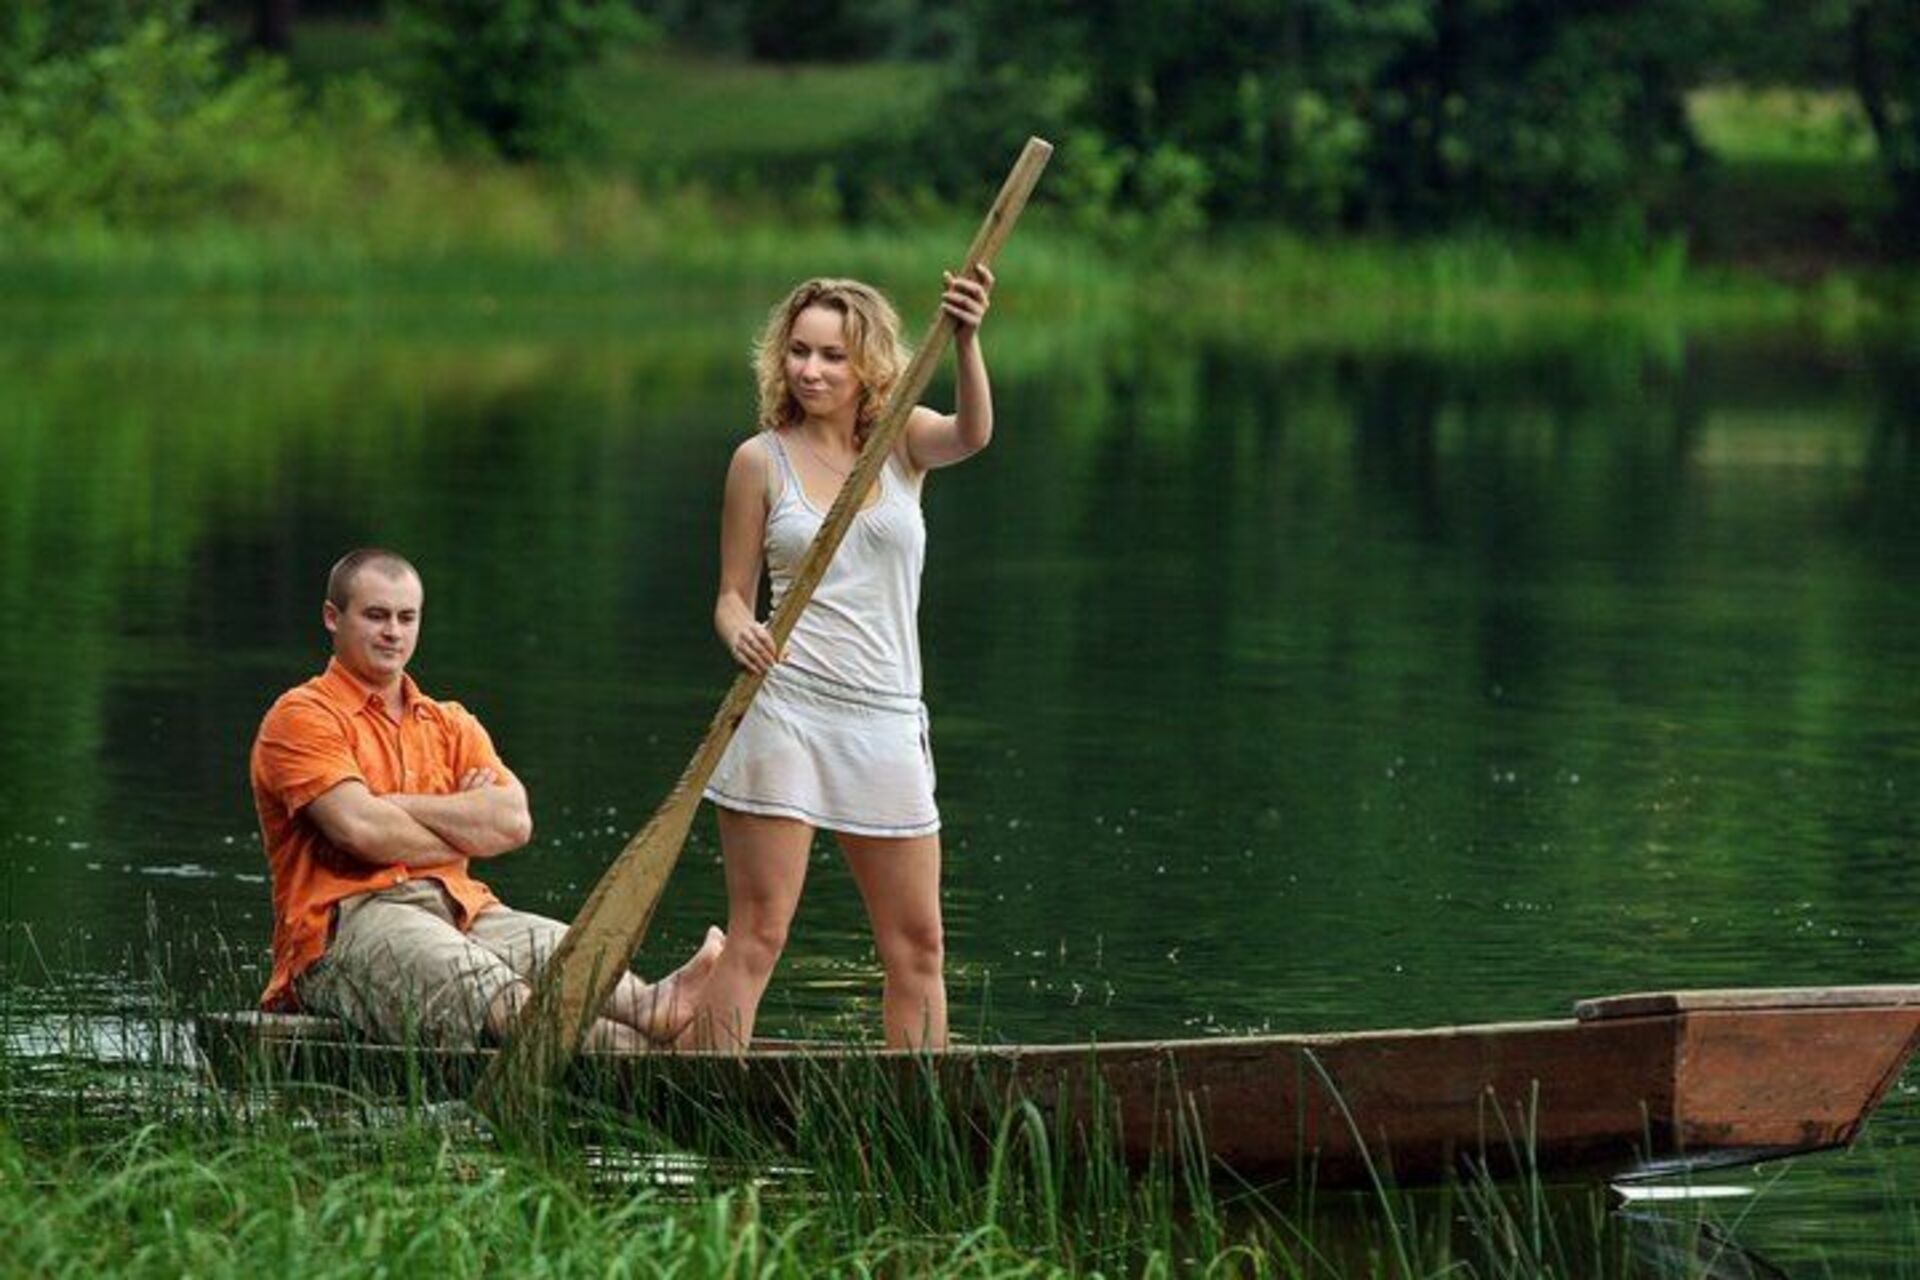 Жена с незнакомым мужчиной. Девушка на лодке с веслами. Мужчина и женщина на рыбалке. Женщина и мужчина рыбачат. Равноправие мужчин и женщин юмор.